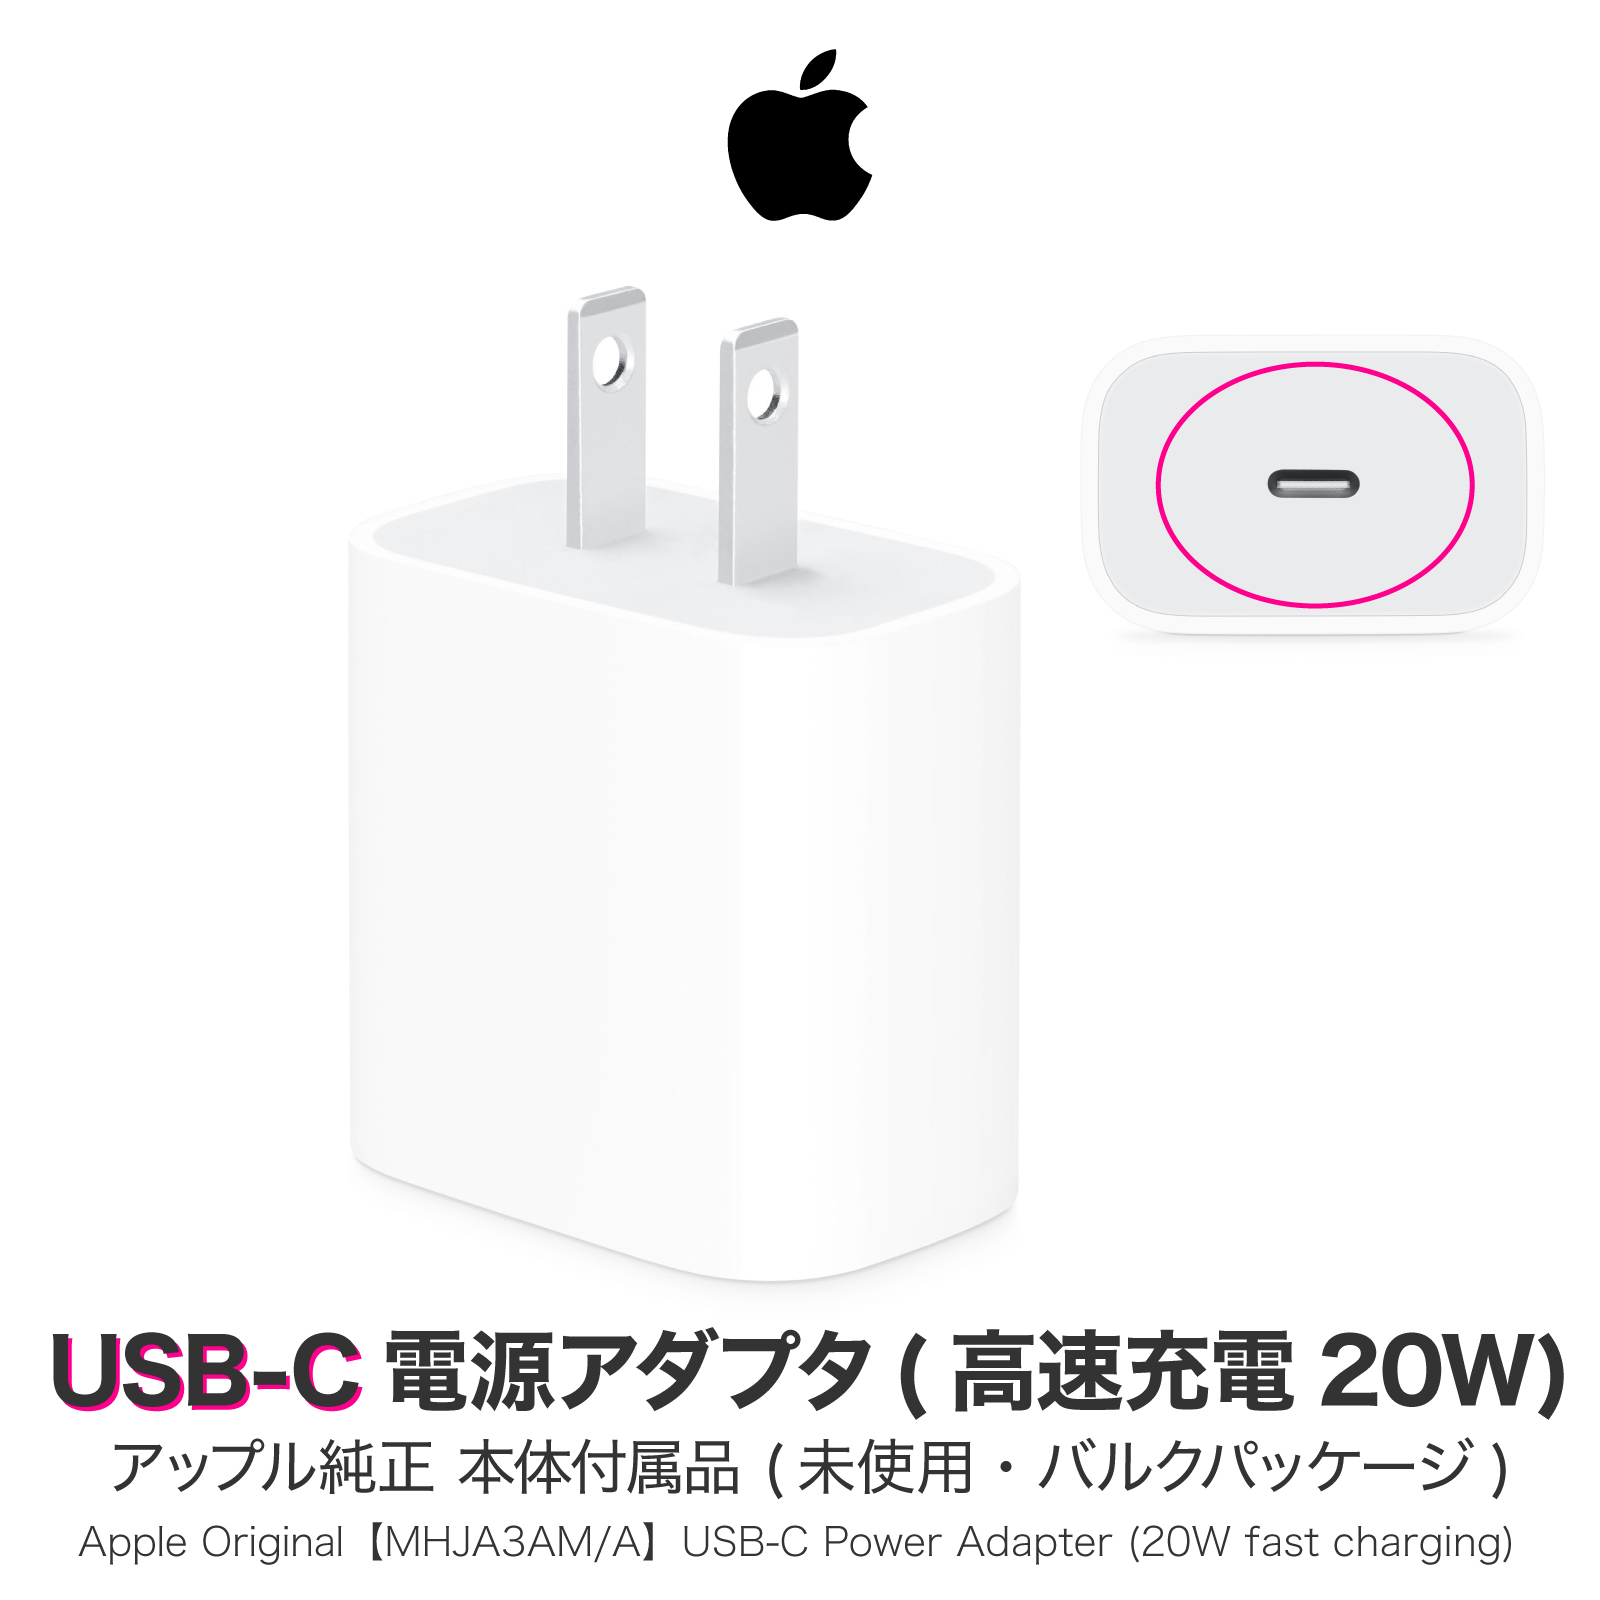 Apple純正 20W USB-C 電源アダプタ PD 急速充電 アップル純正 iPhone iPod 充電器 コンセント アップル純正品20W アイフォン MHJA3AM A